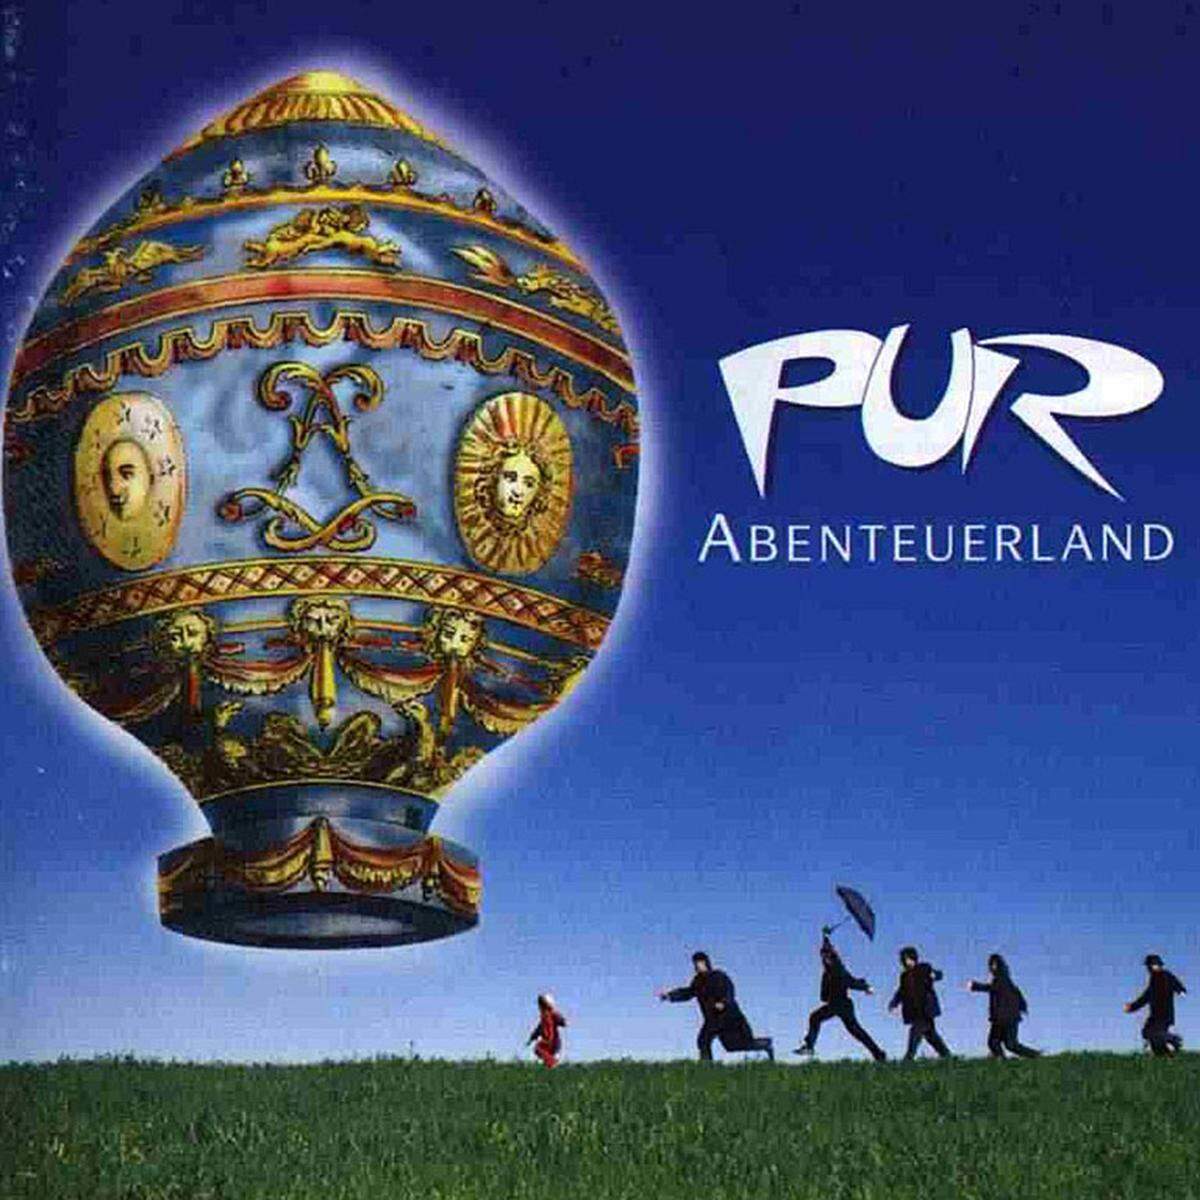 Pur - Abenteuerland (1995)